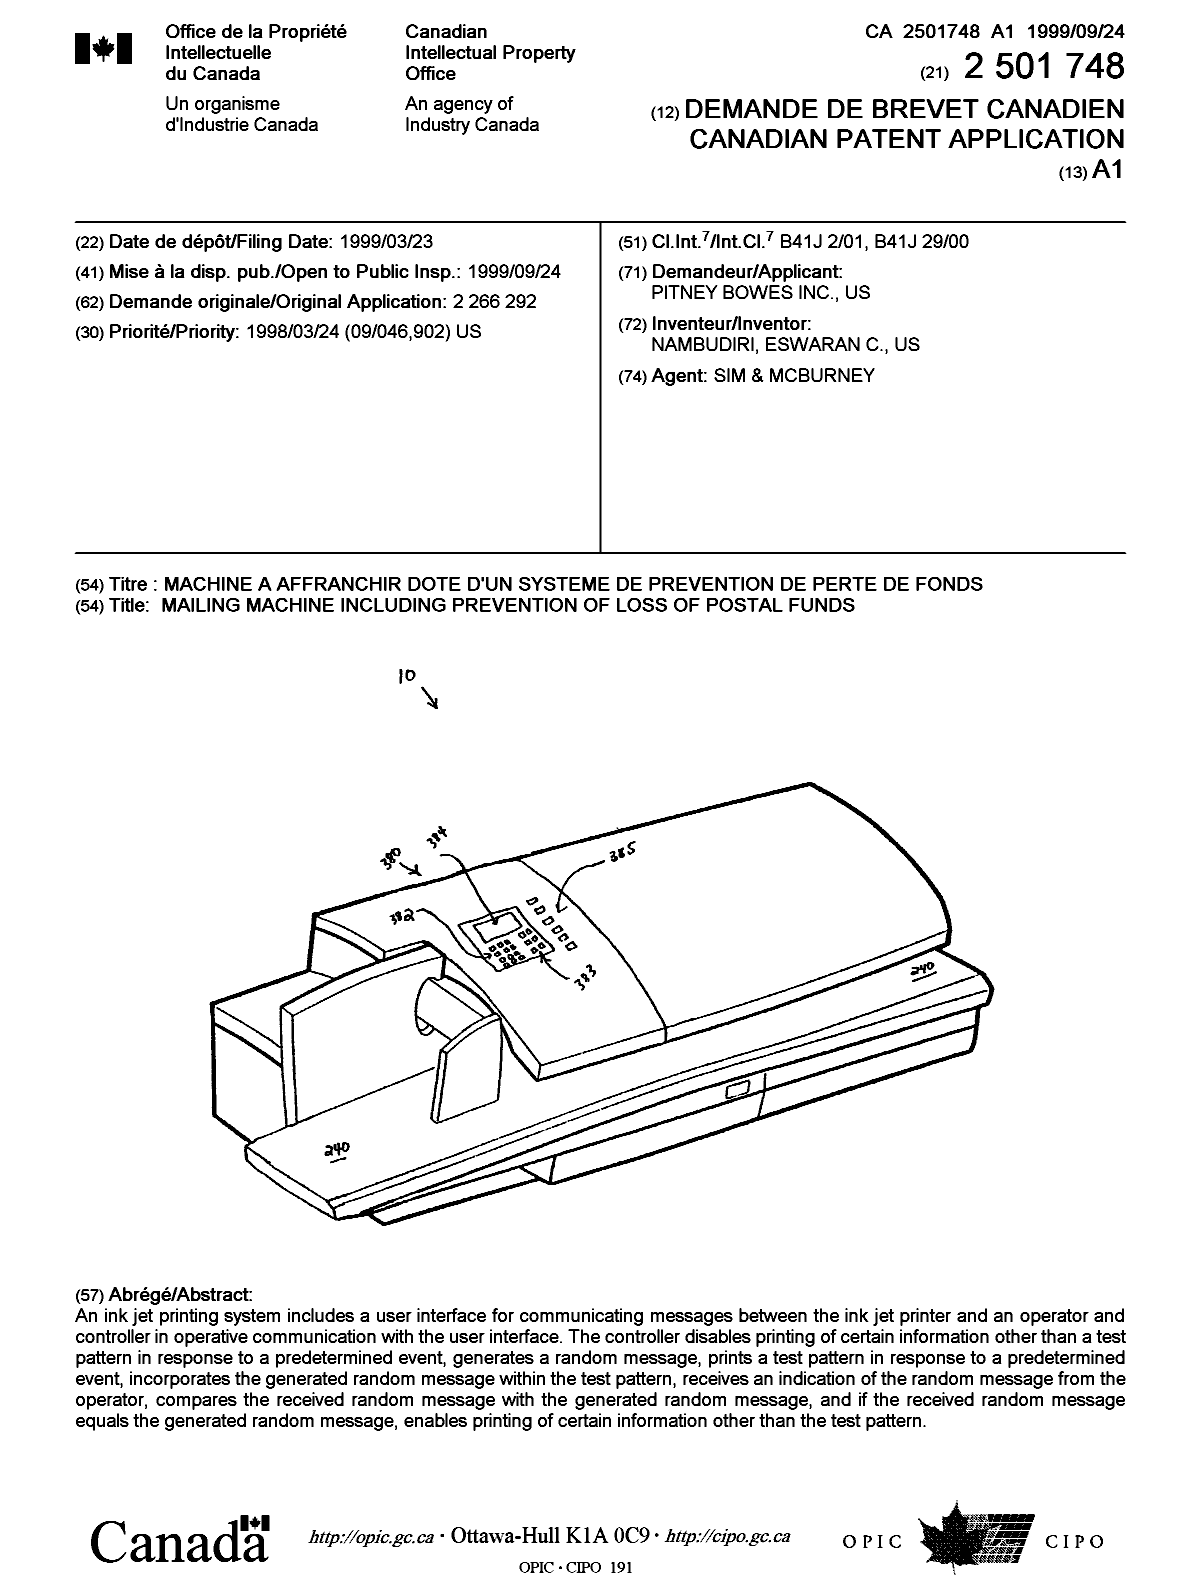 Document de brevet canadien 2501748. Page couverture 20050527. Image 1 de 1